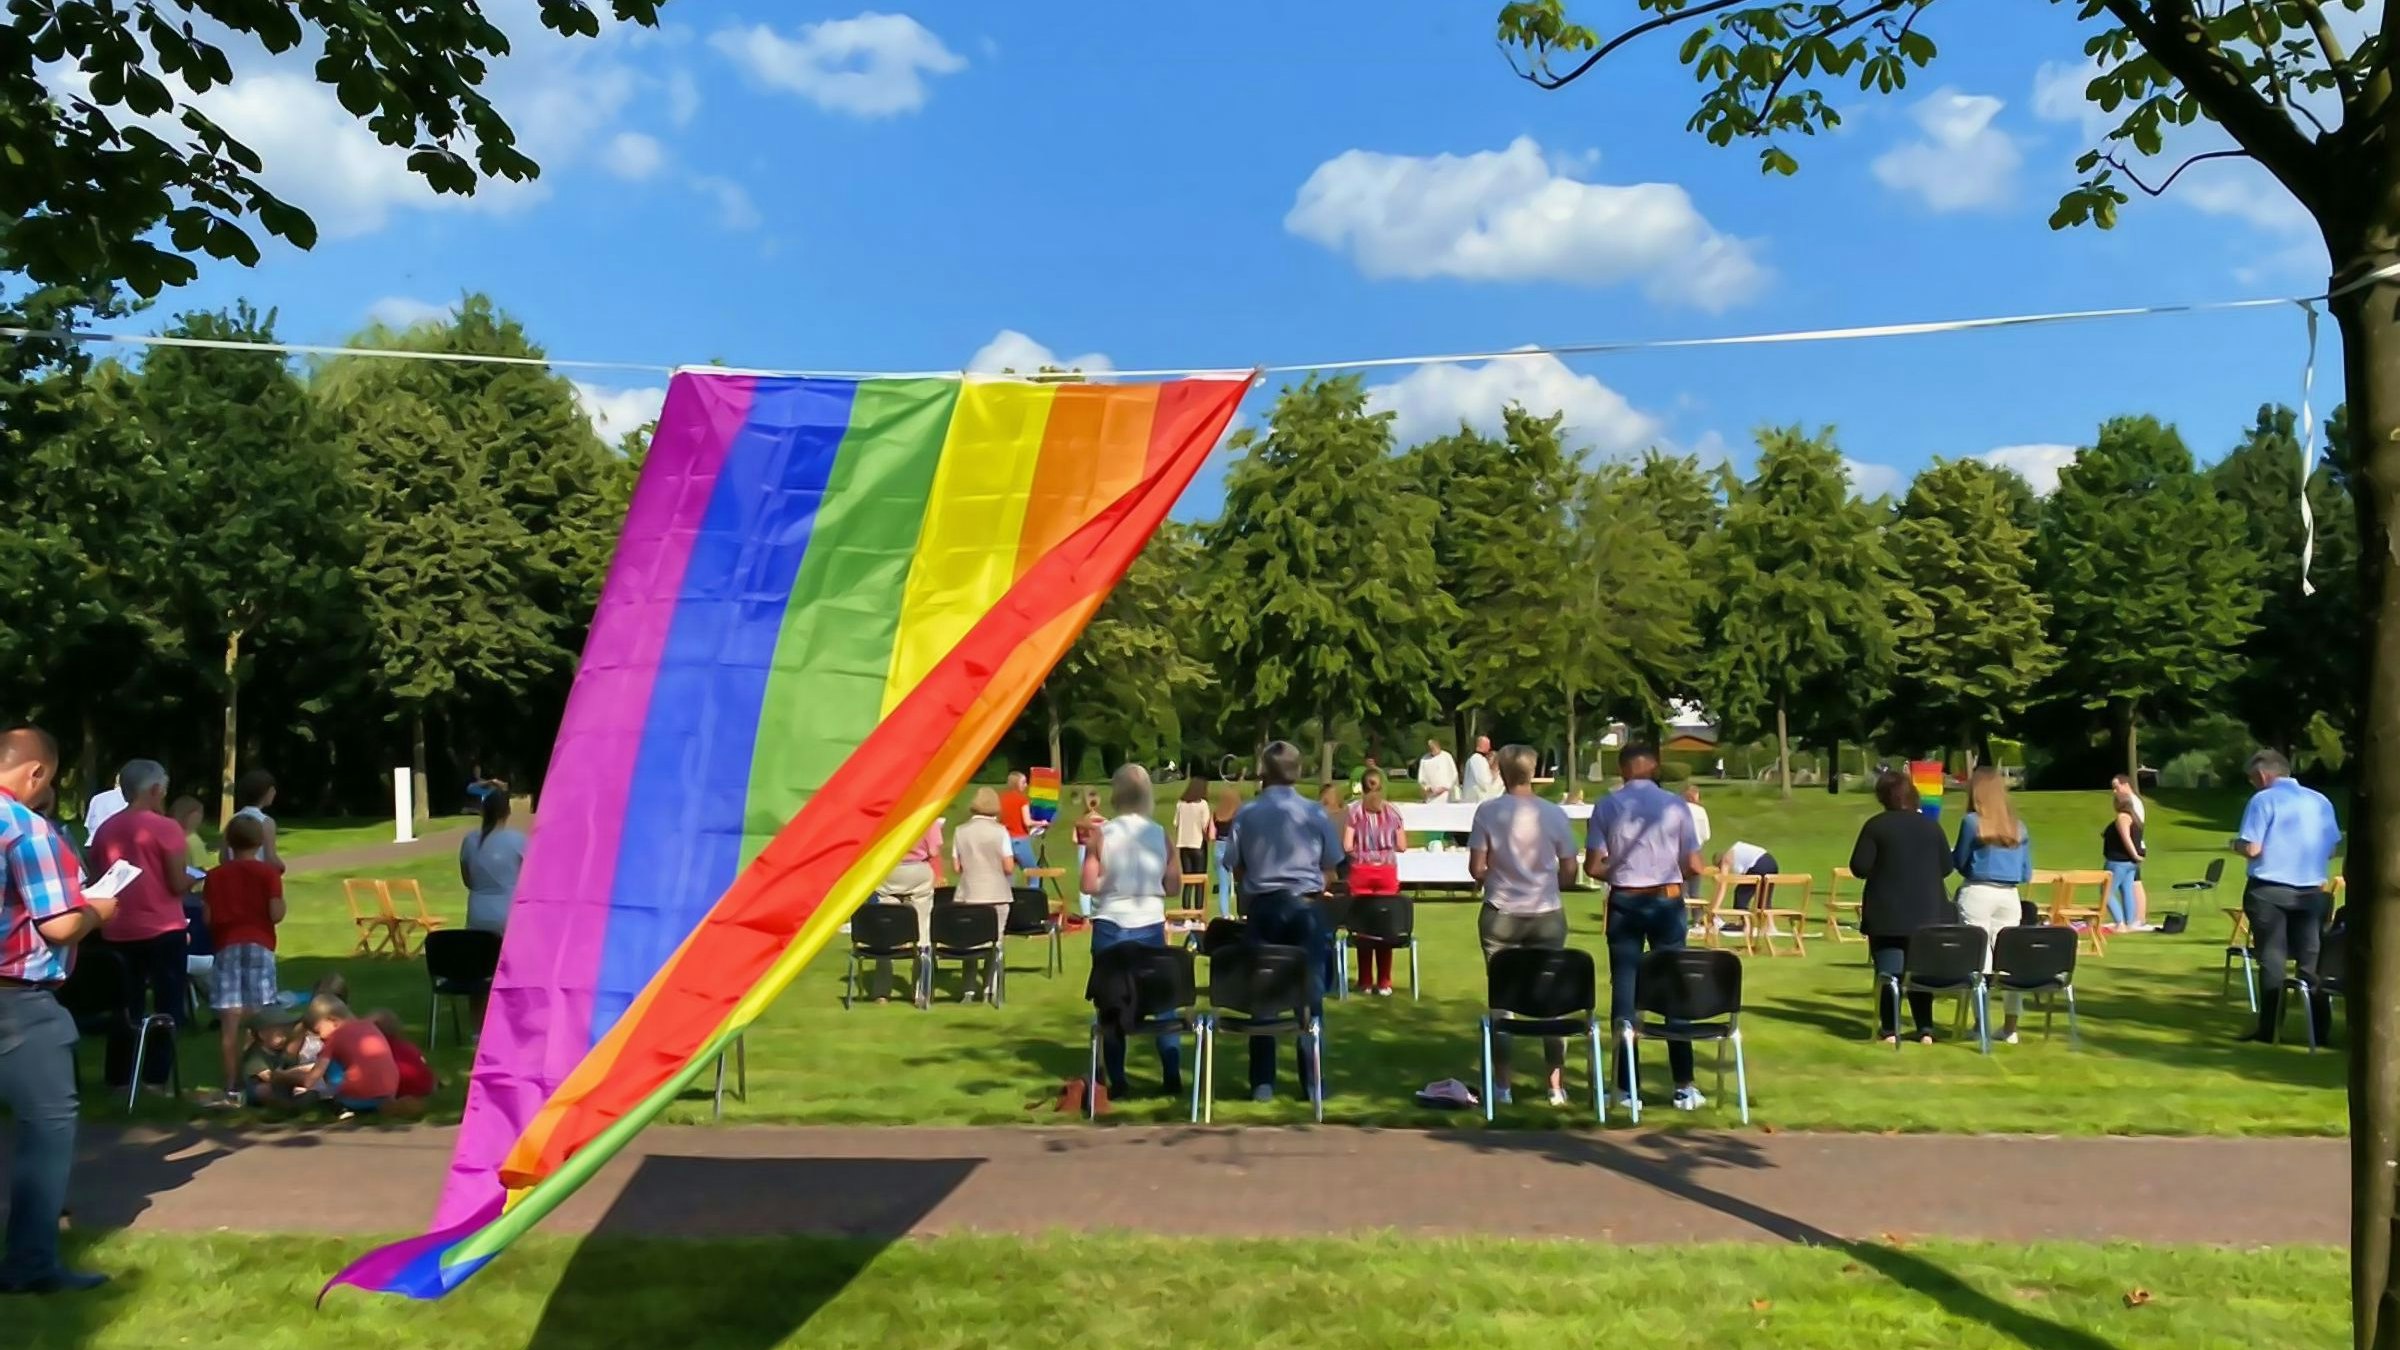 Starkes Symbol: Der Regenbogen stand im Mittelpunkt des Open-Air-Gottesdienstes. Foto: Ruby Wright